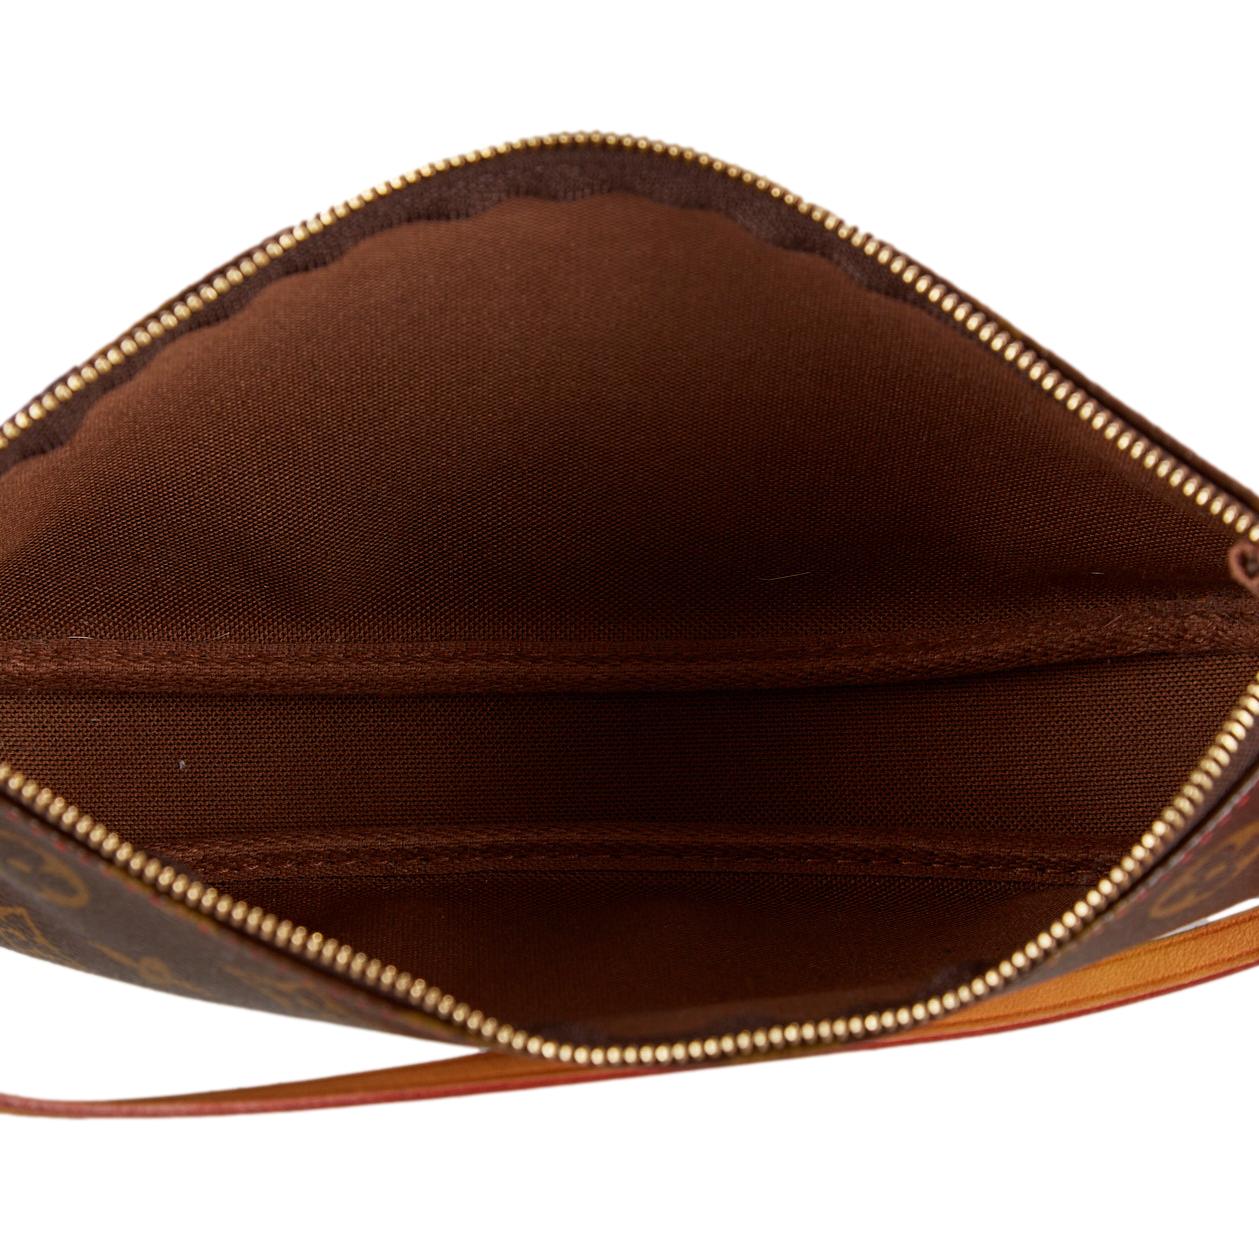 Louis Vuitton Monogram Cherry Shoulder Bag